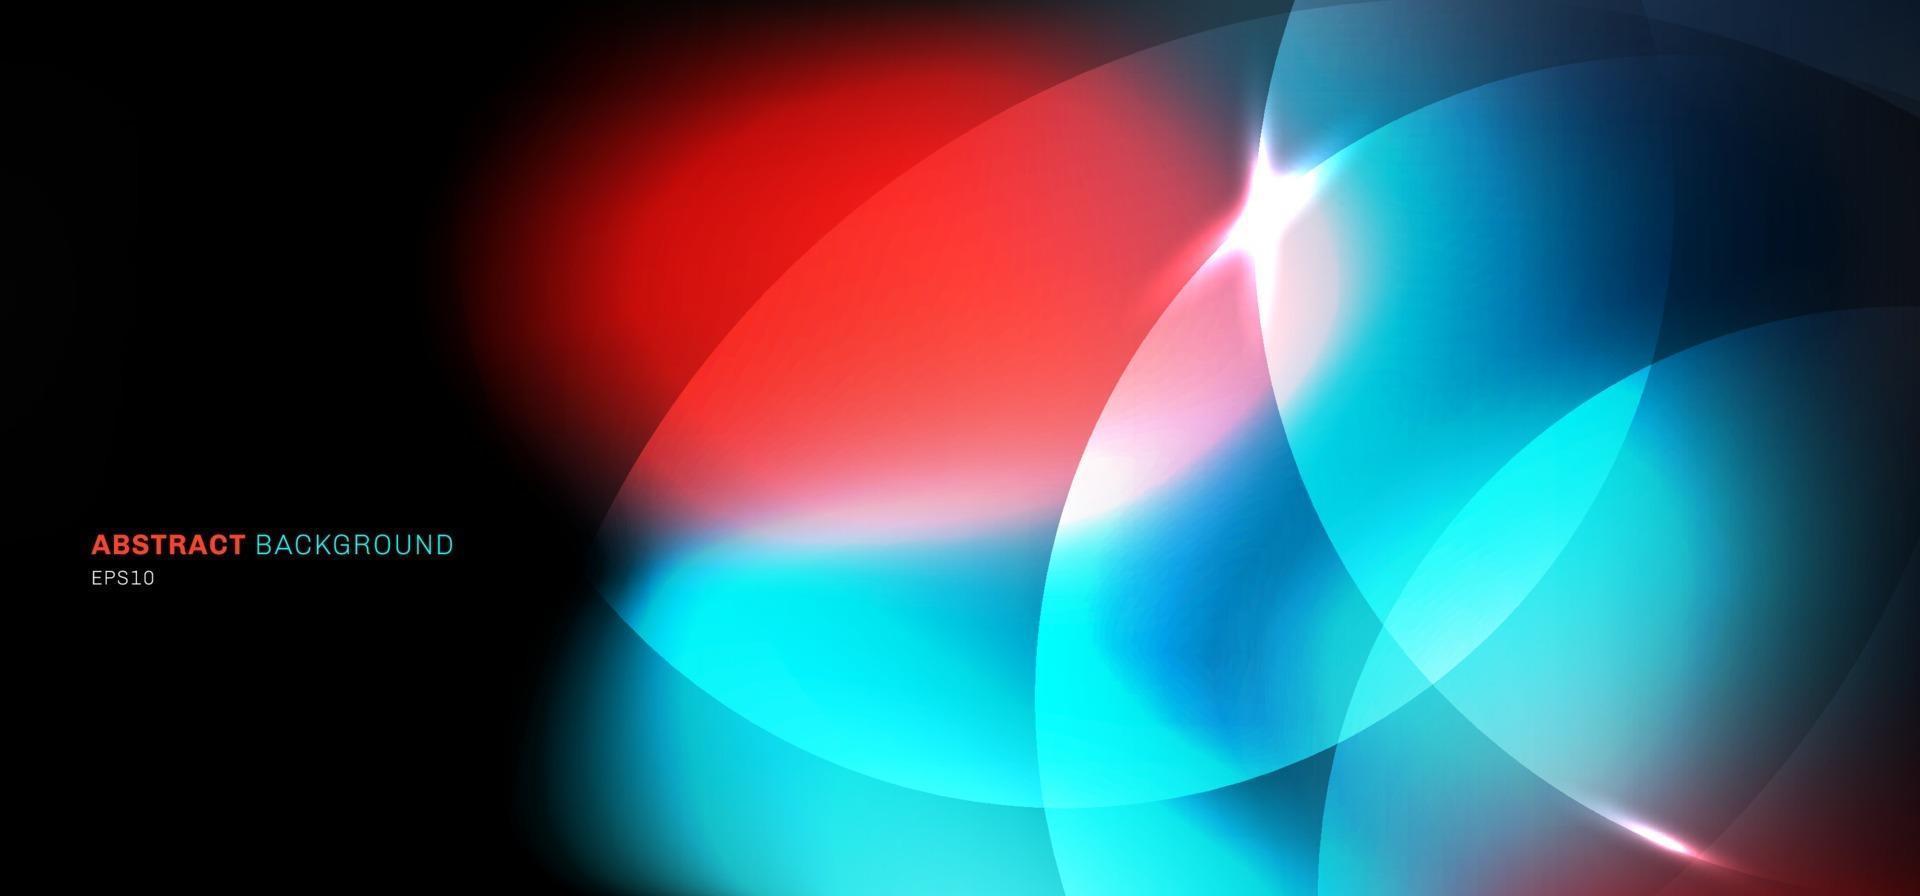 abstrakt bokeh suddig svart bakgrund cirklar med blå och röd ljuseffekt vektor